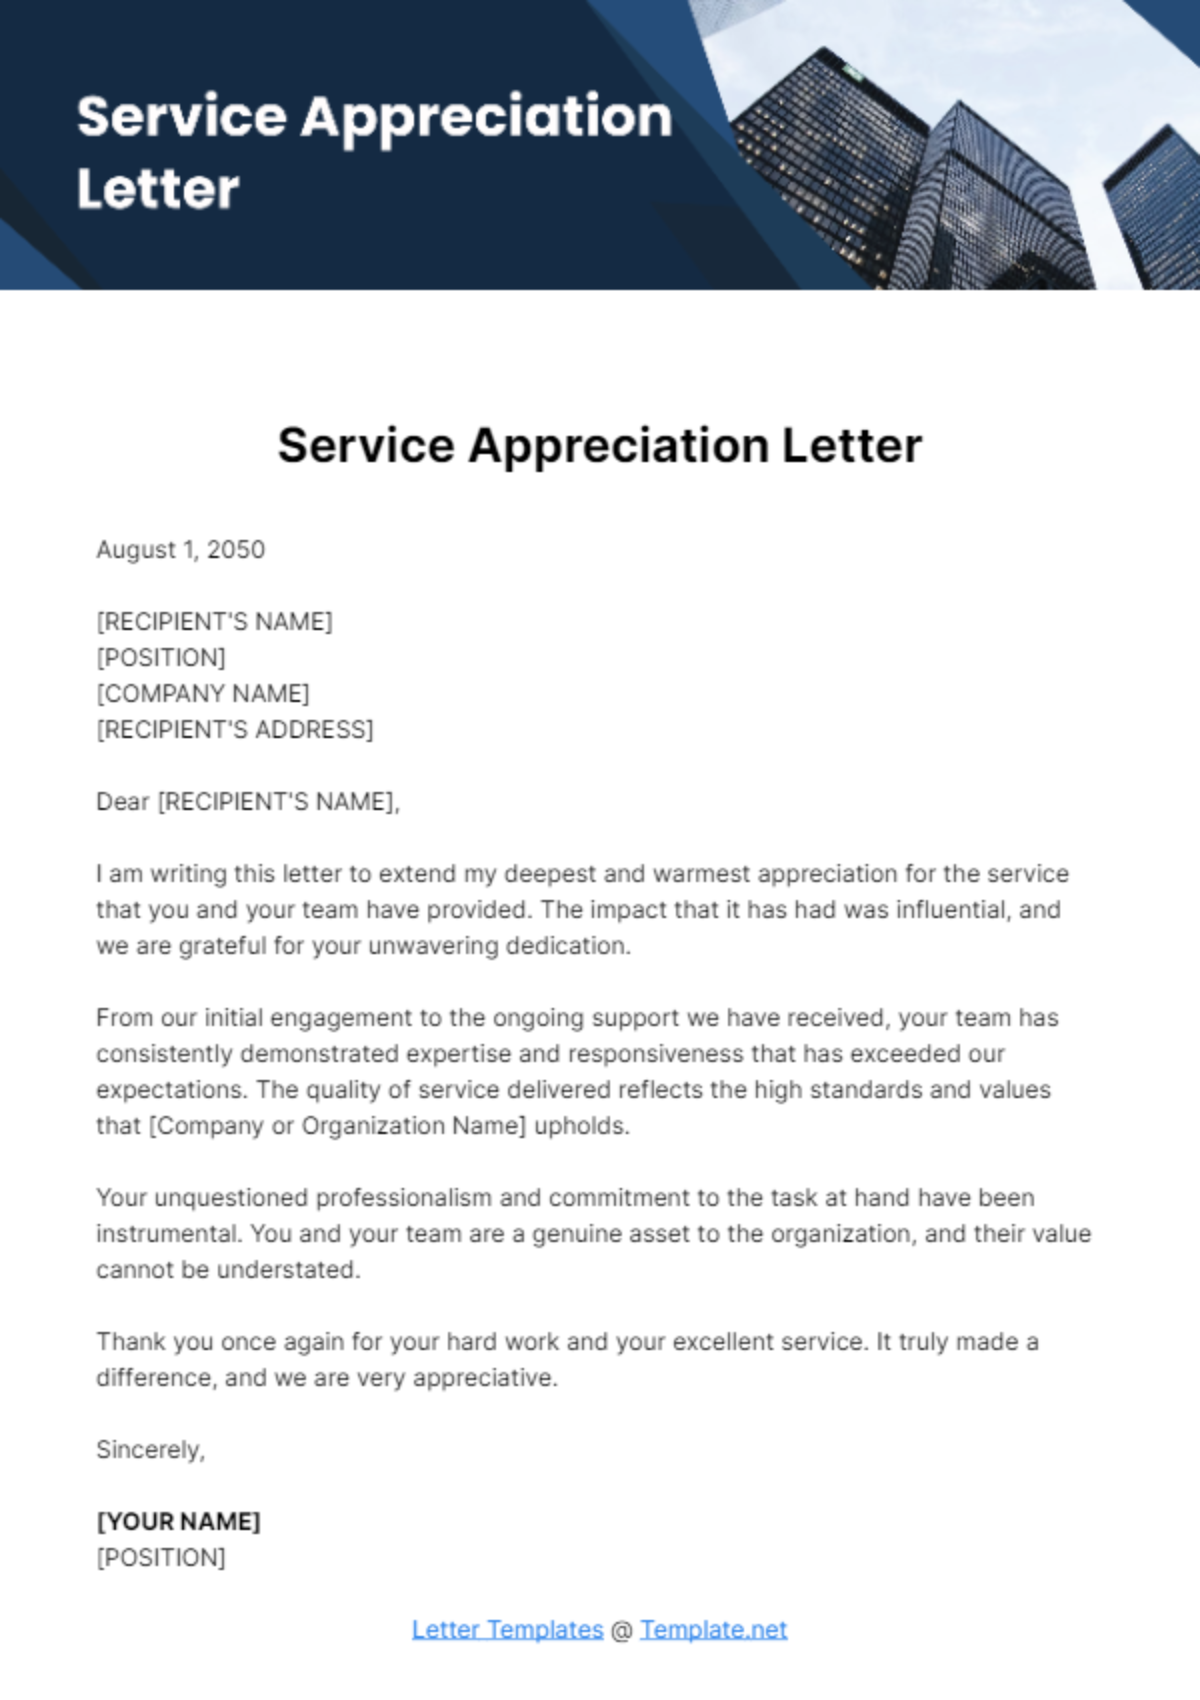 Free Service Appreciation Letter Template